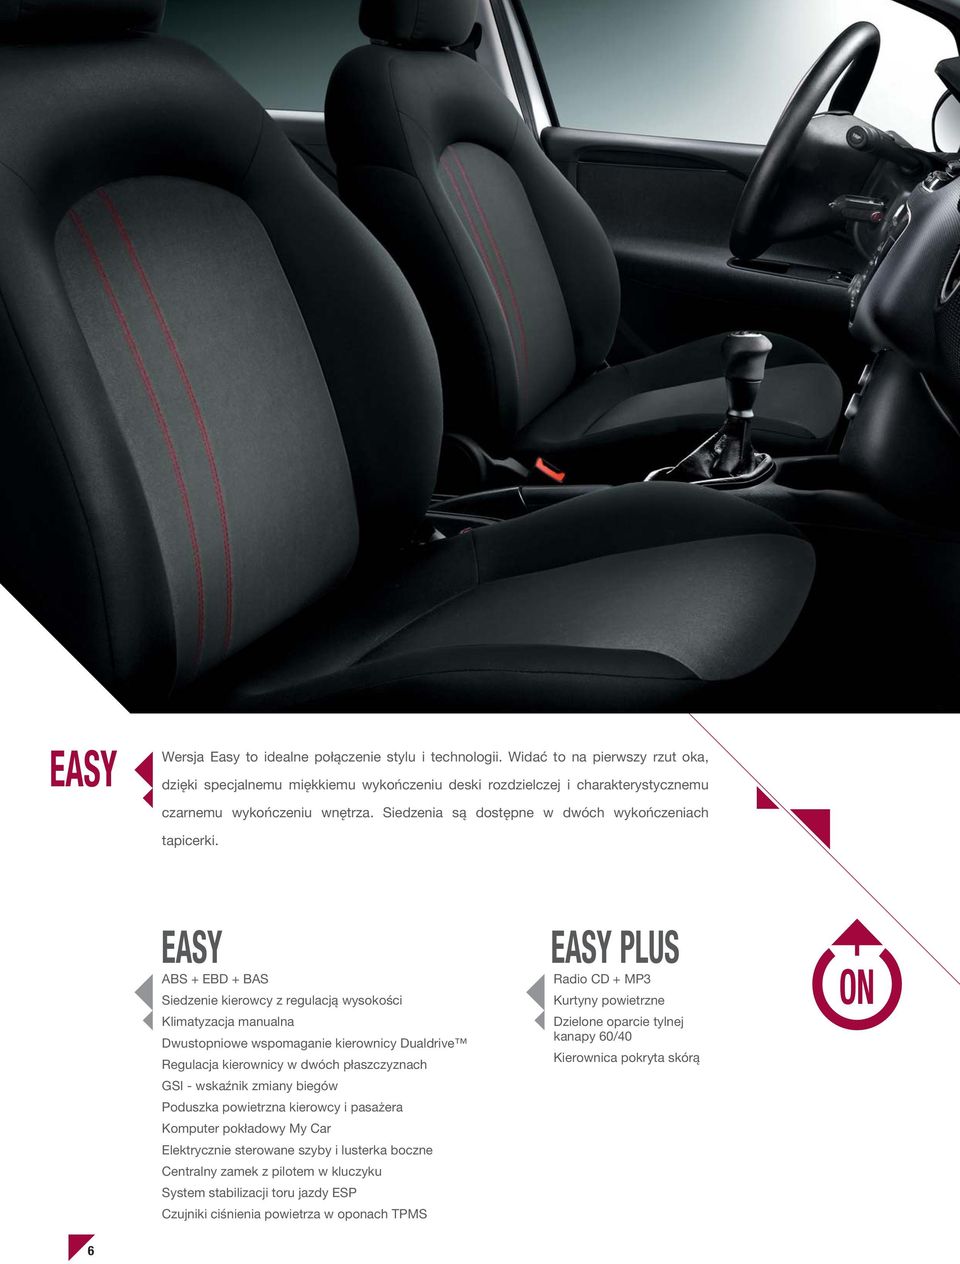 EASY ABS + EBD + BAS Siedzenie kierowcy z regulacją wysokości Klimatyzacja manualna Dwustopniowe wspomaganie kierownicy Dualdrive Regulacja kierownicy w dwóch płaszczyznach GSI - wskaźnik zmiany